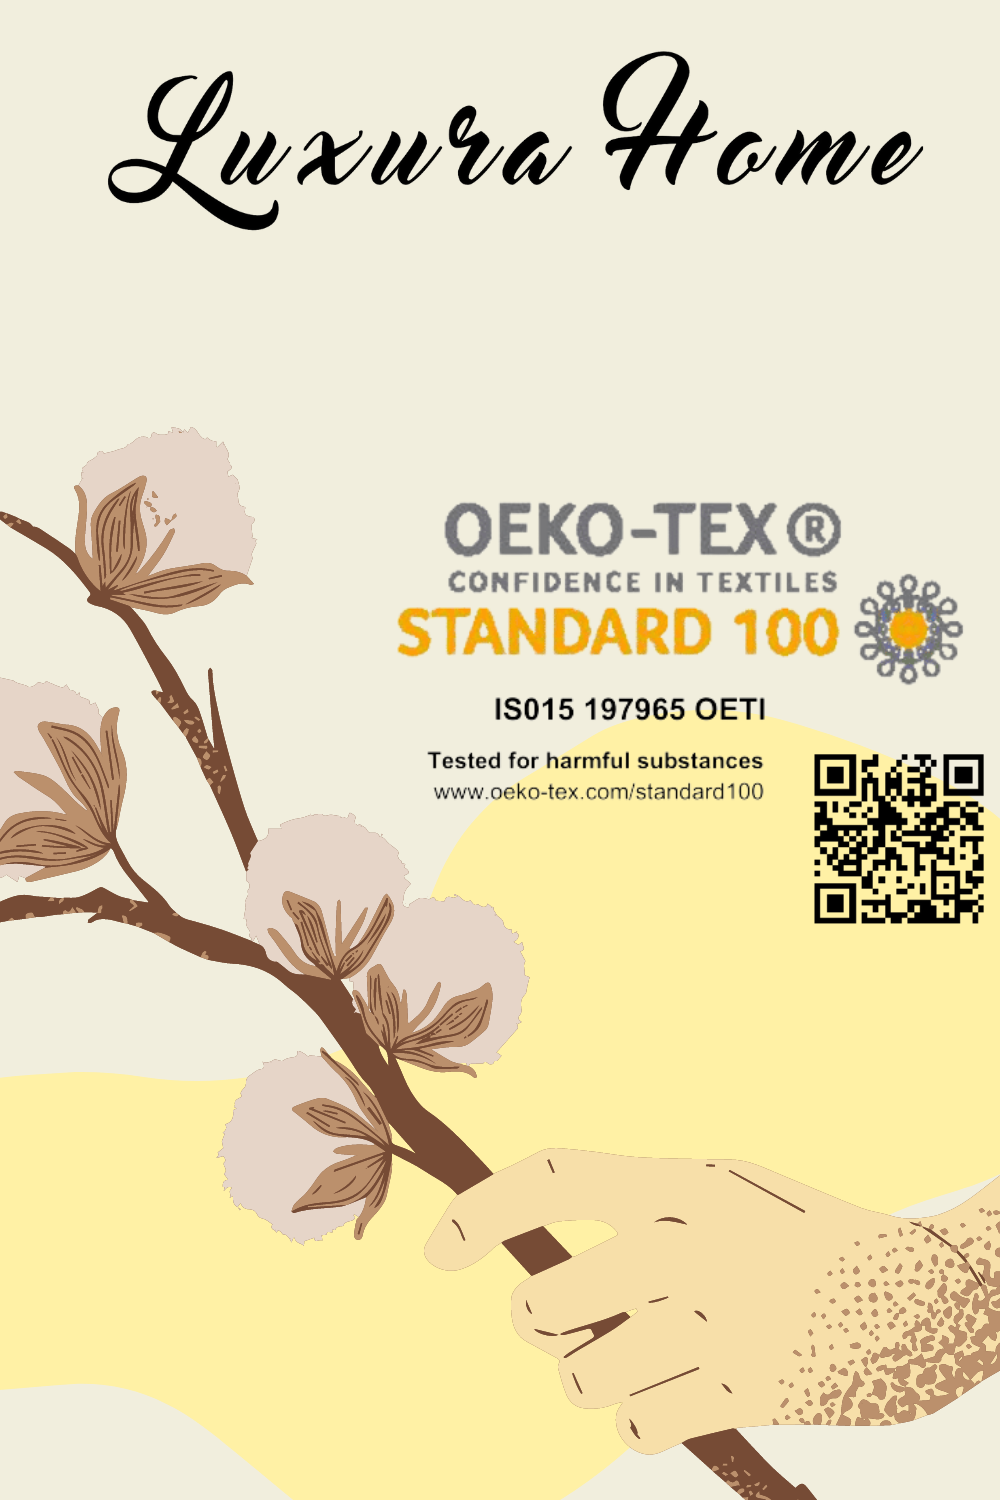 %100 Oeko-Tex® pamuktan üretilmiş püsküllü Şaheser Mona jakarlı yatak örtüsü